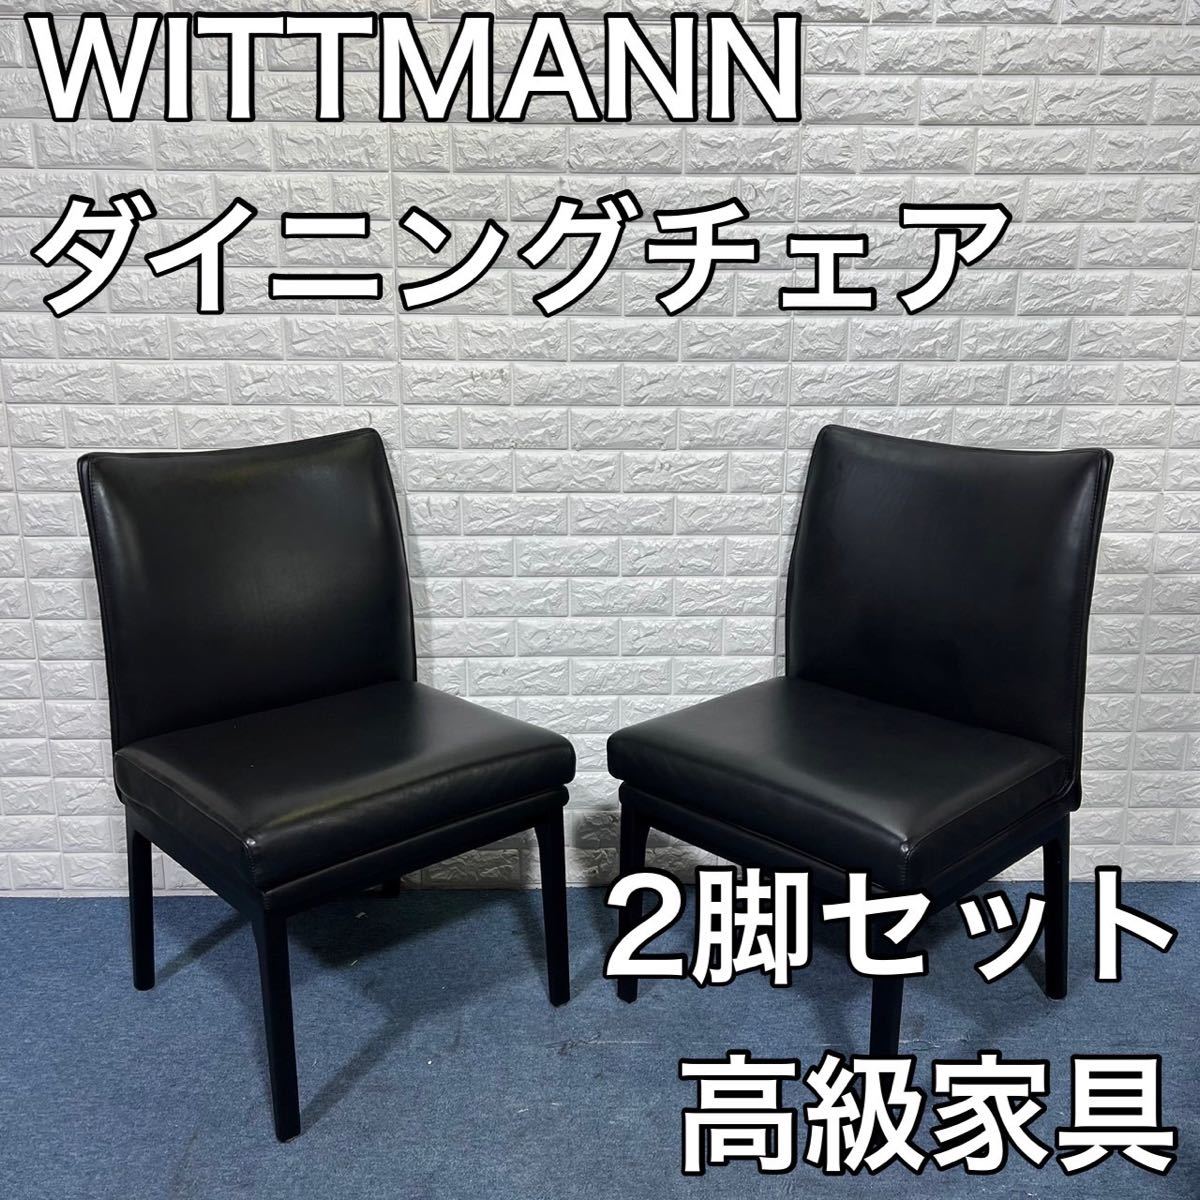 雑誌で紹介された WITTMANN ヴィットマン ダイニングチェア 高級 家具 インテリア 2脚セット ダイニングチェア